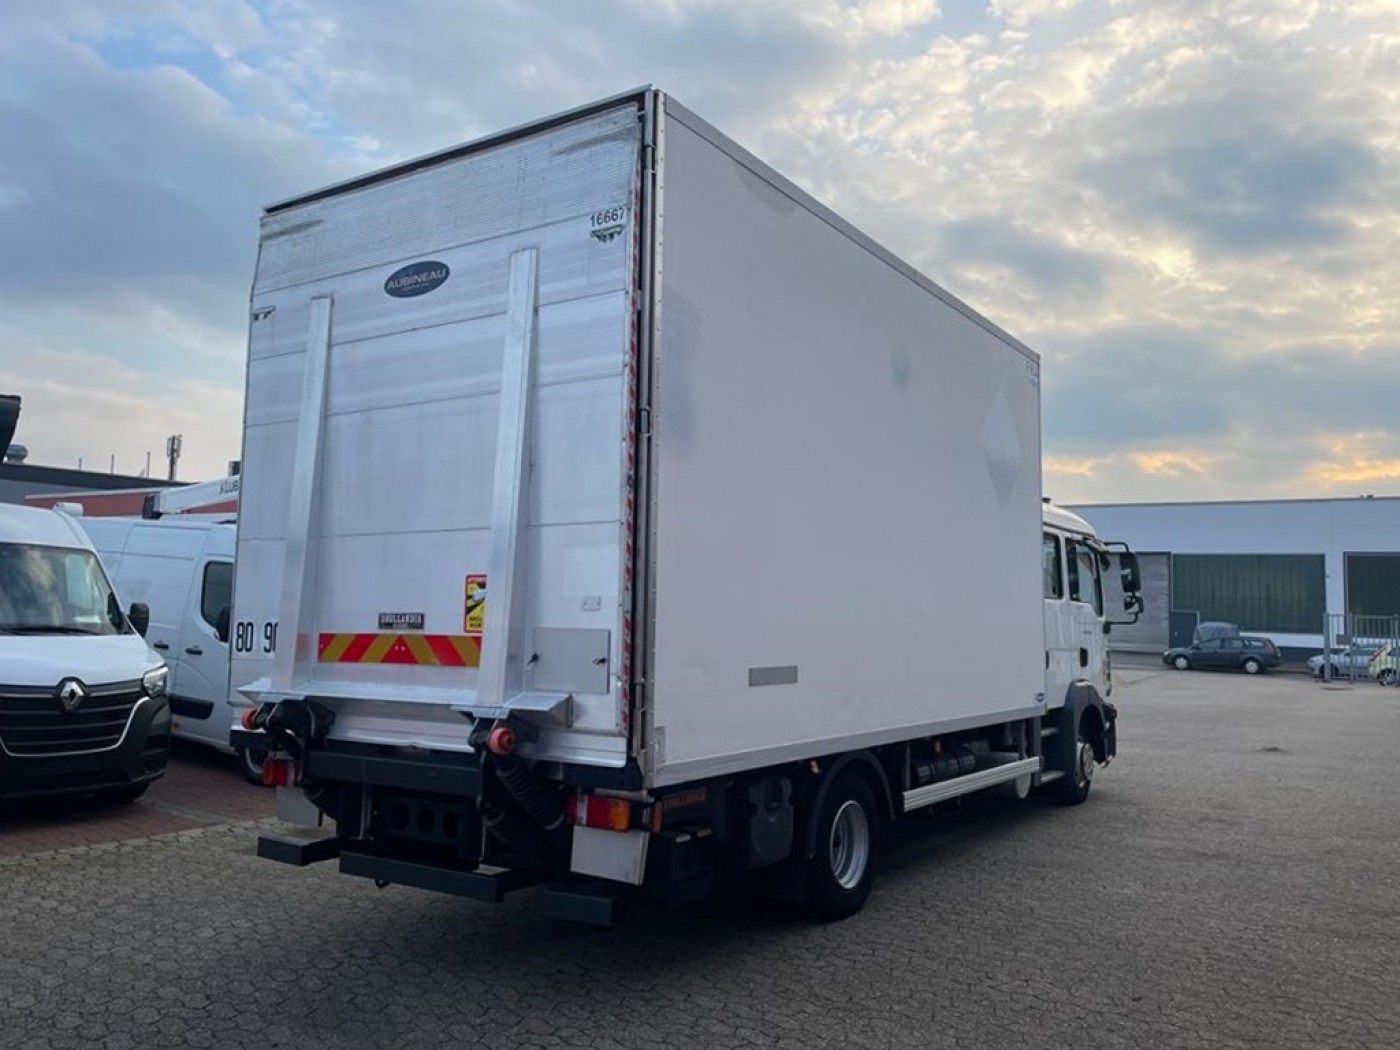 MAN TGL 10.220 Cabina doppia Camion frigo box mobili veicolo per traslochi veicolo per il trasporto darte